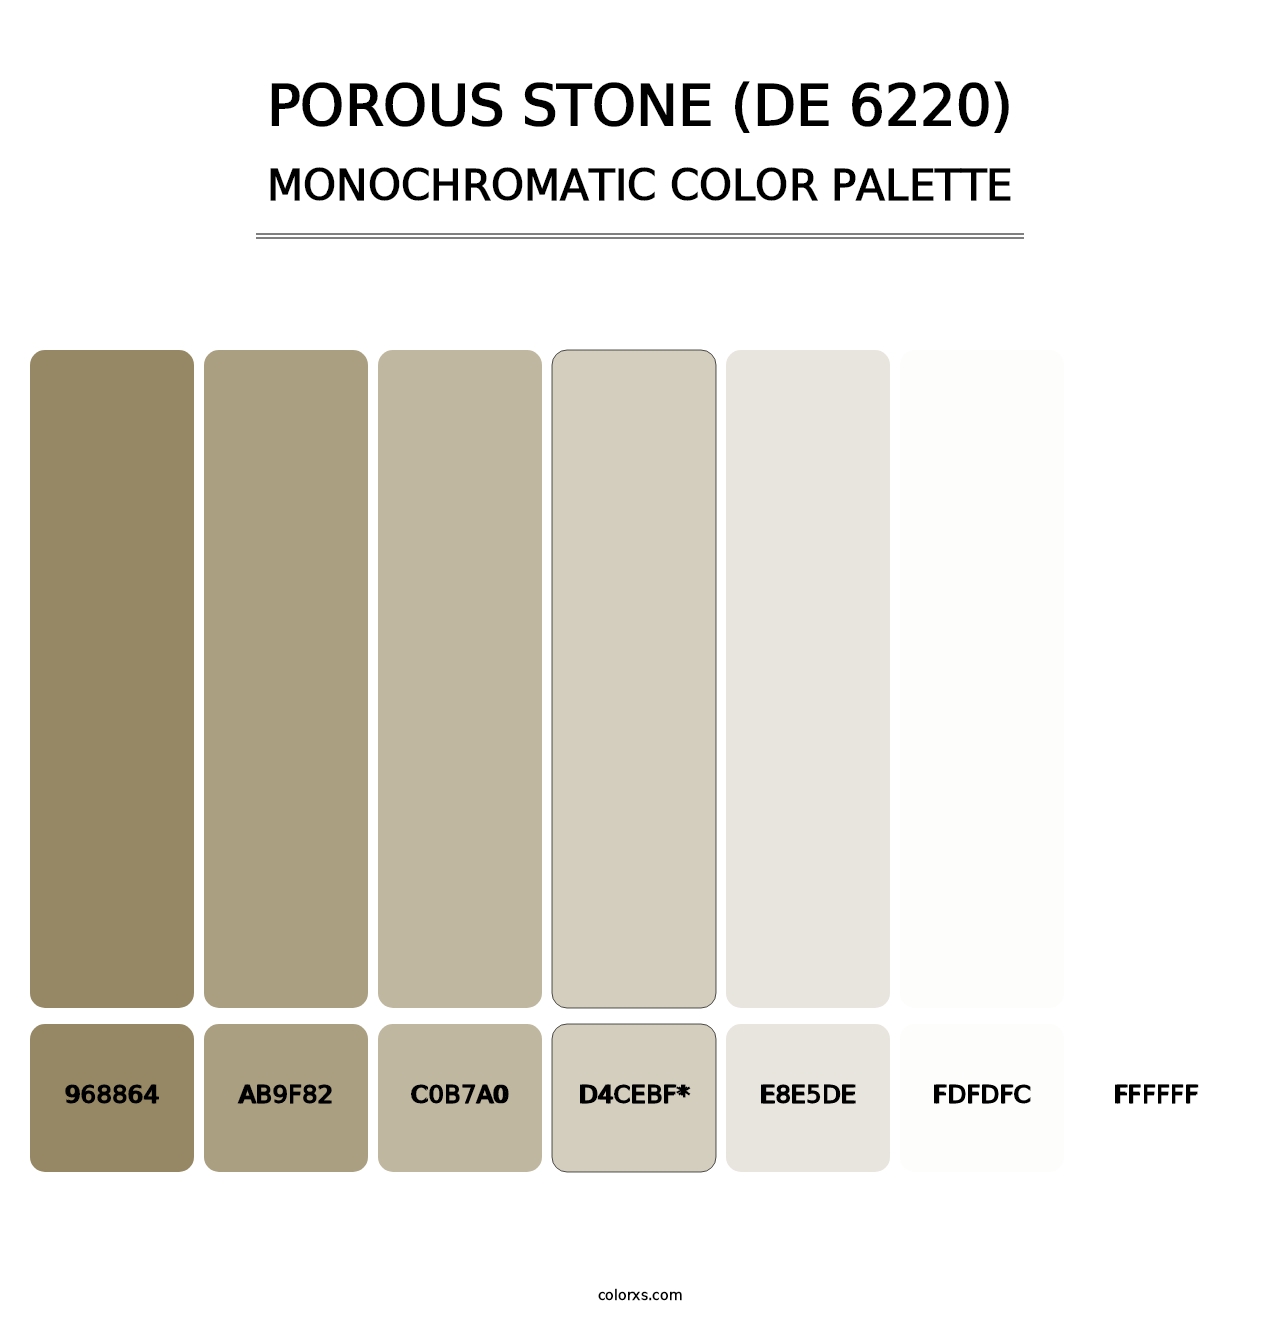 Porous Stone (DE 6220) - Monochromatic Color Palette